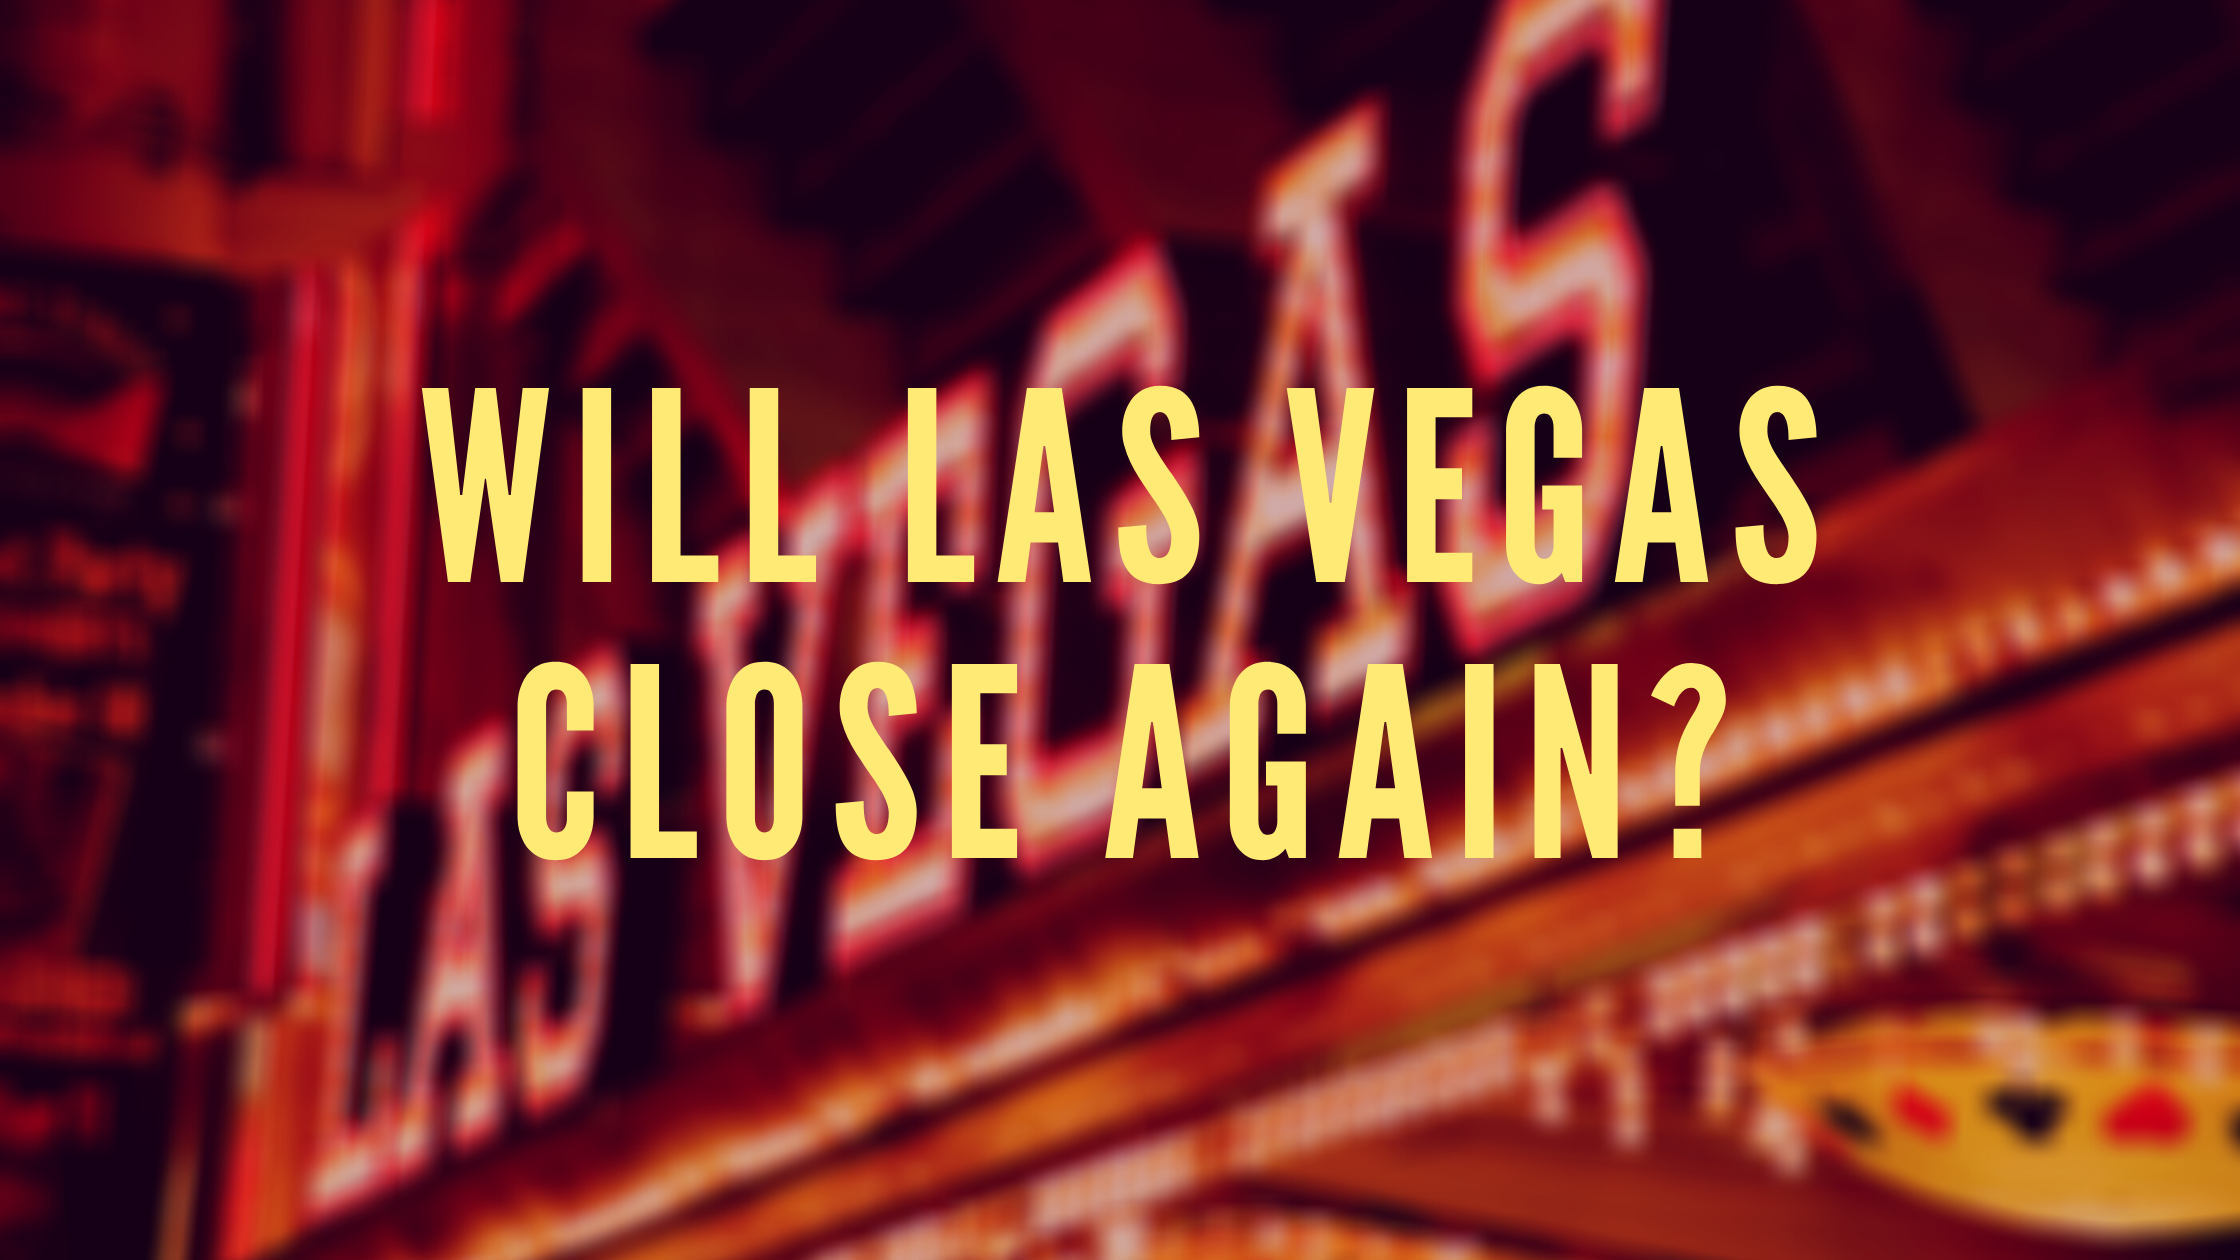 what casino closed in las vegas